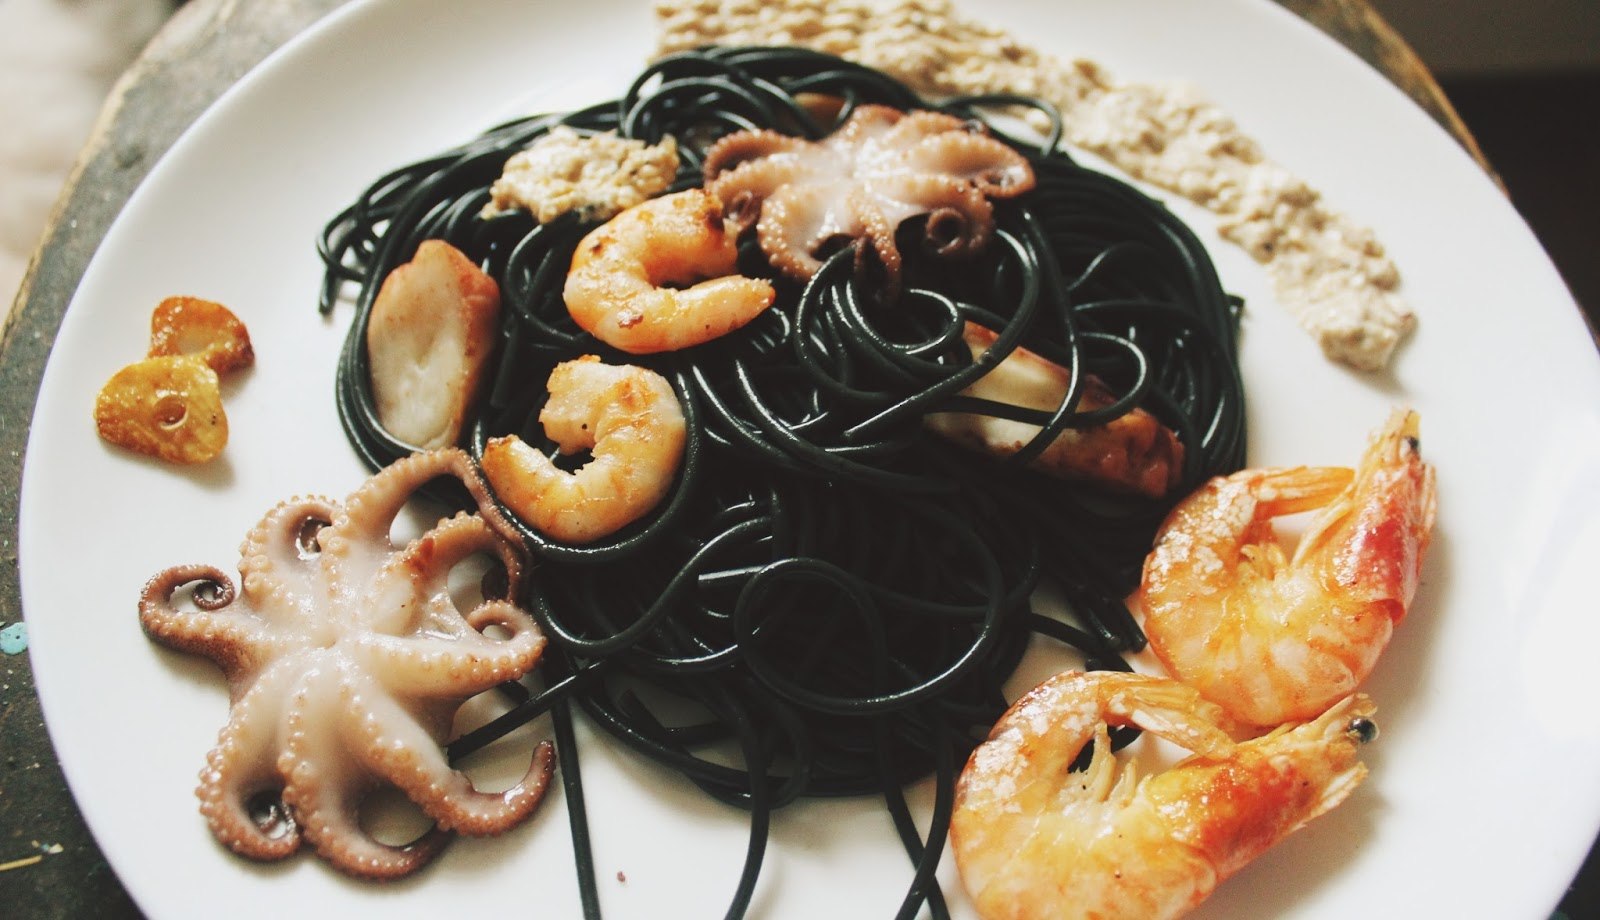 Паста с каракатицей. Паста черная каракатица с морепродуктами. Спагетти Неро с морепродуктами. Паста Неро с морепродуктами. Лапша черная каракатица.